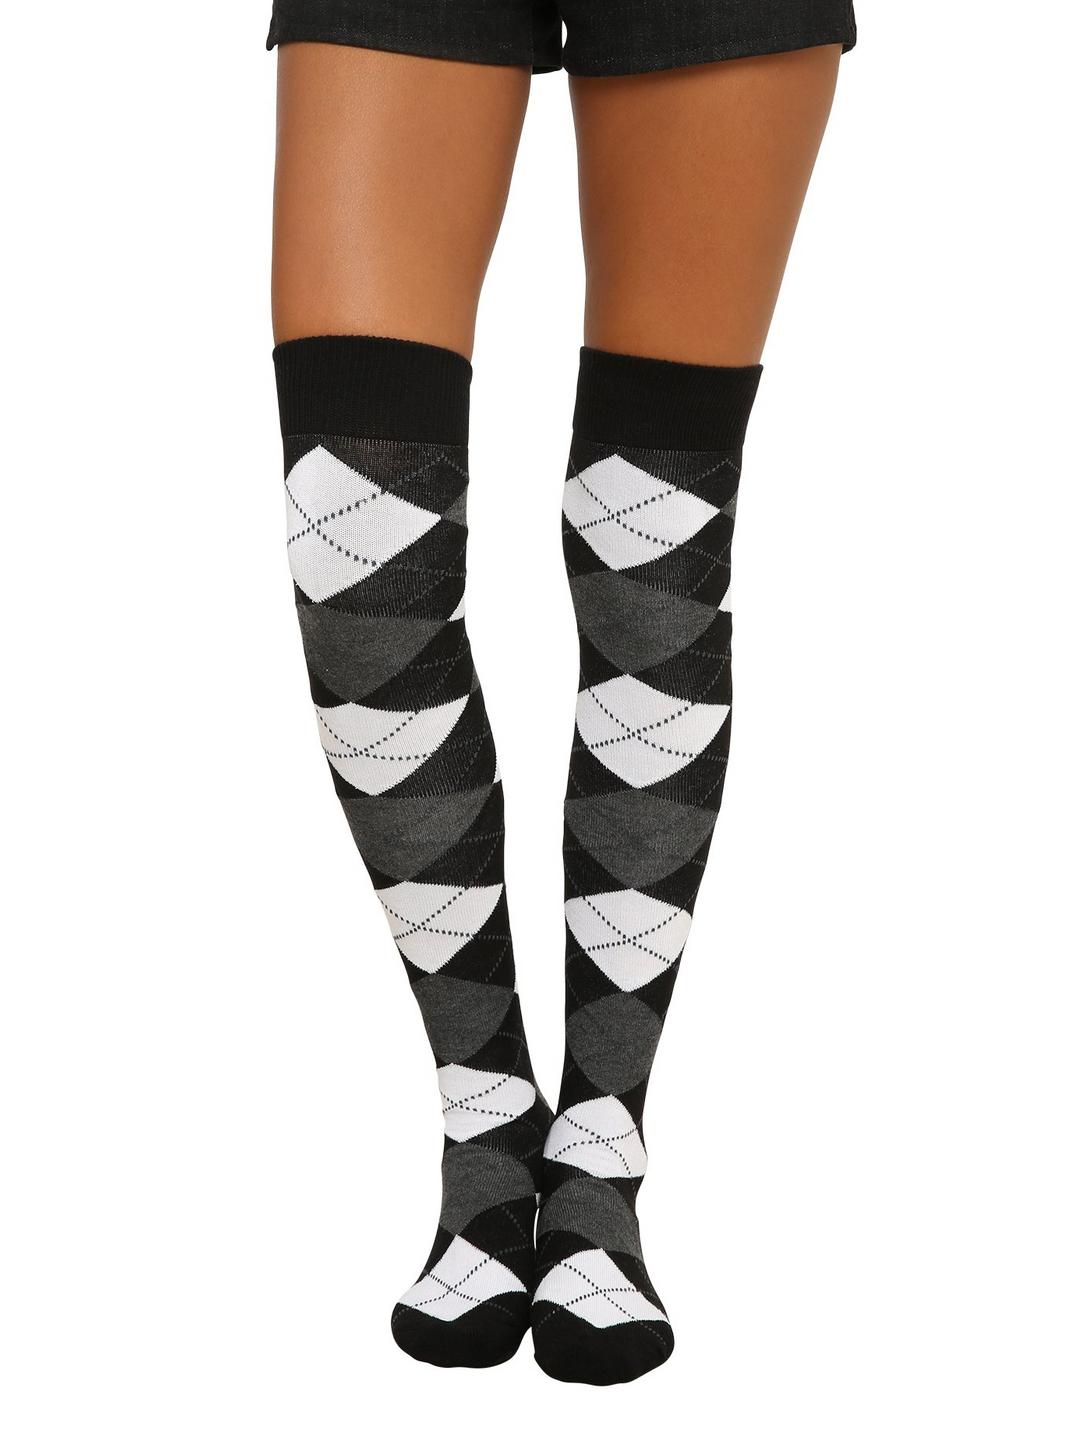 Black Grey & White Argyle Over-The-Knee Socks, , hi-res